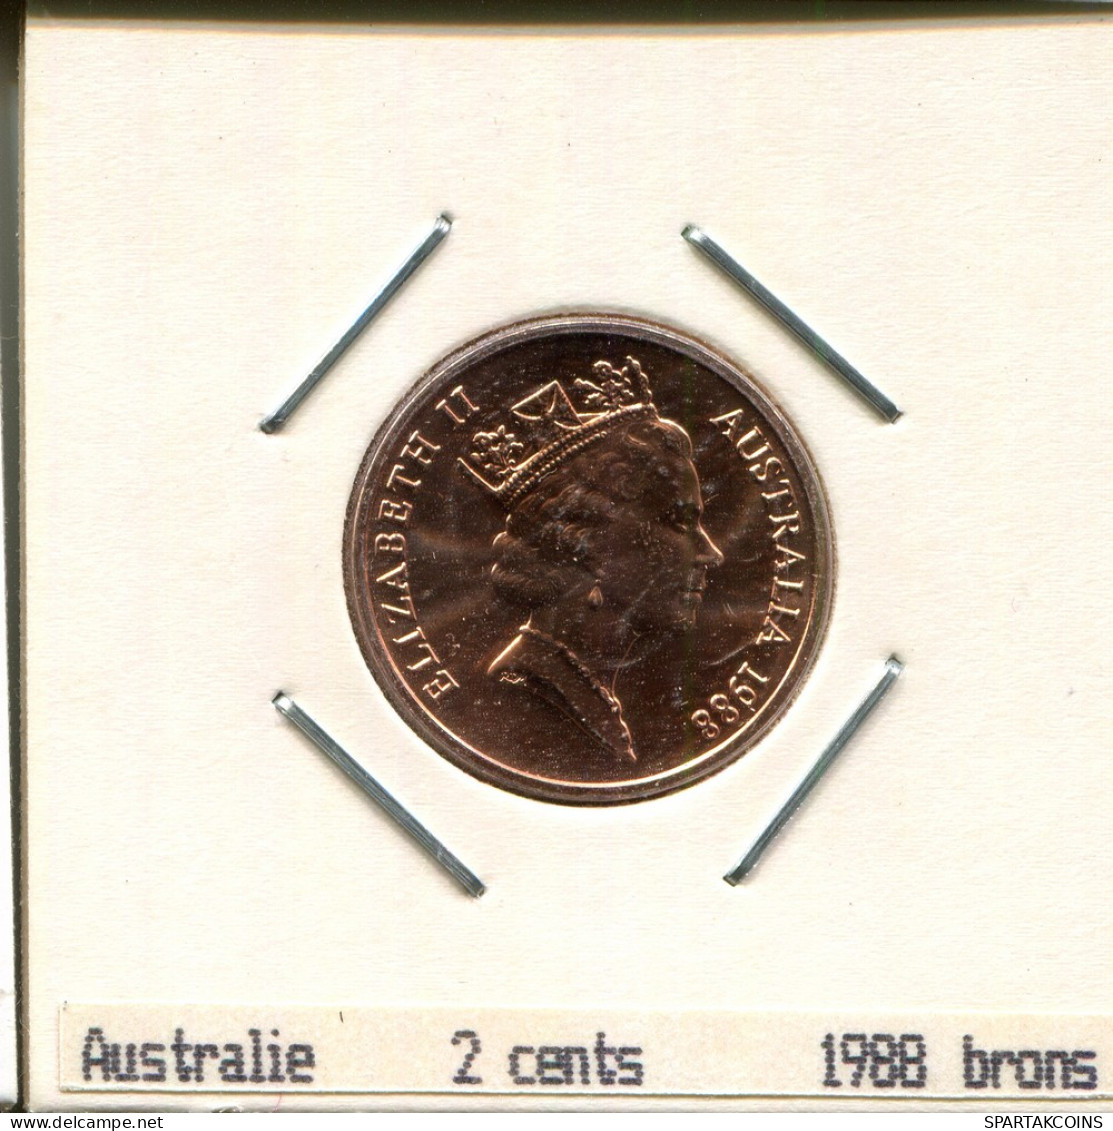 2 CENTS 1988 AUSTRALIEN AUSTRALIA Münze #AS240.D - 2 Cents